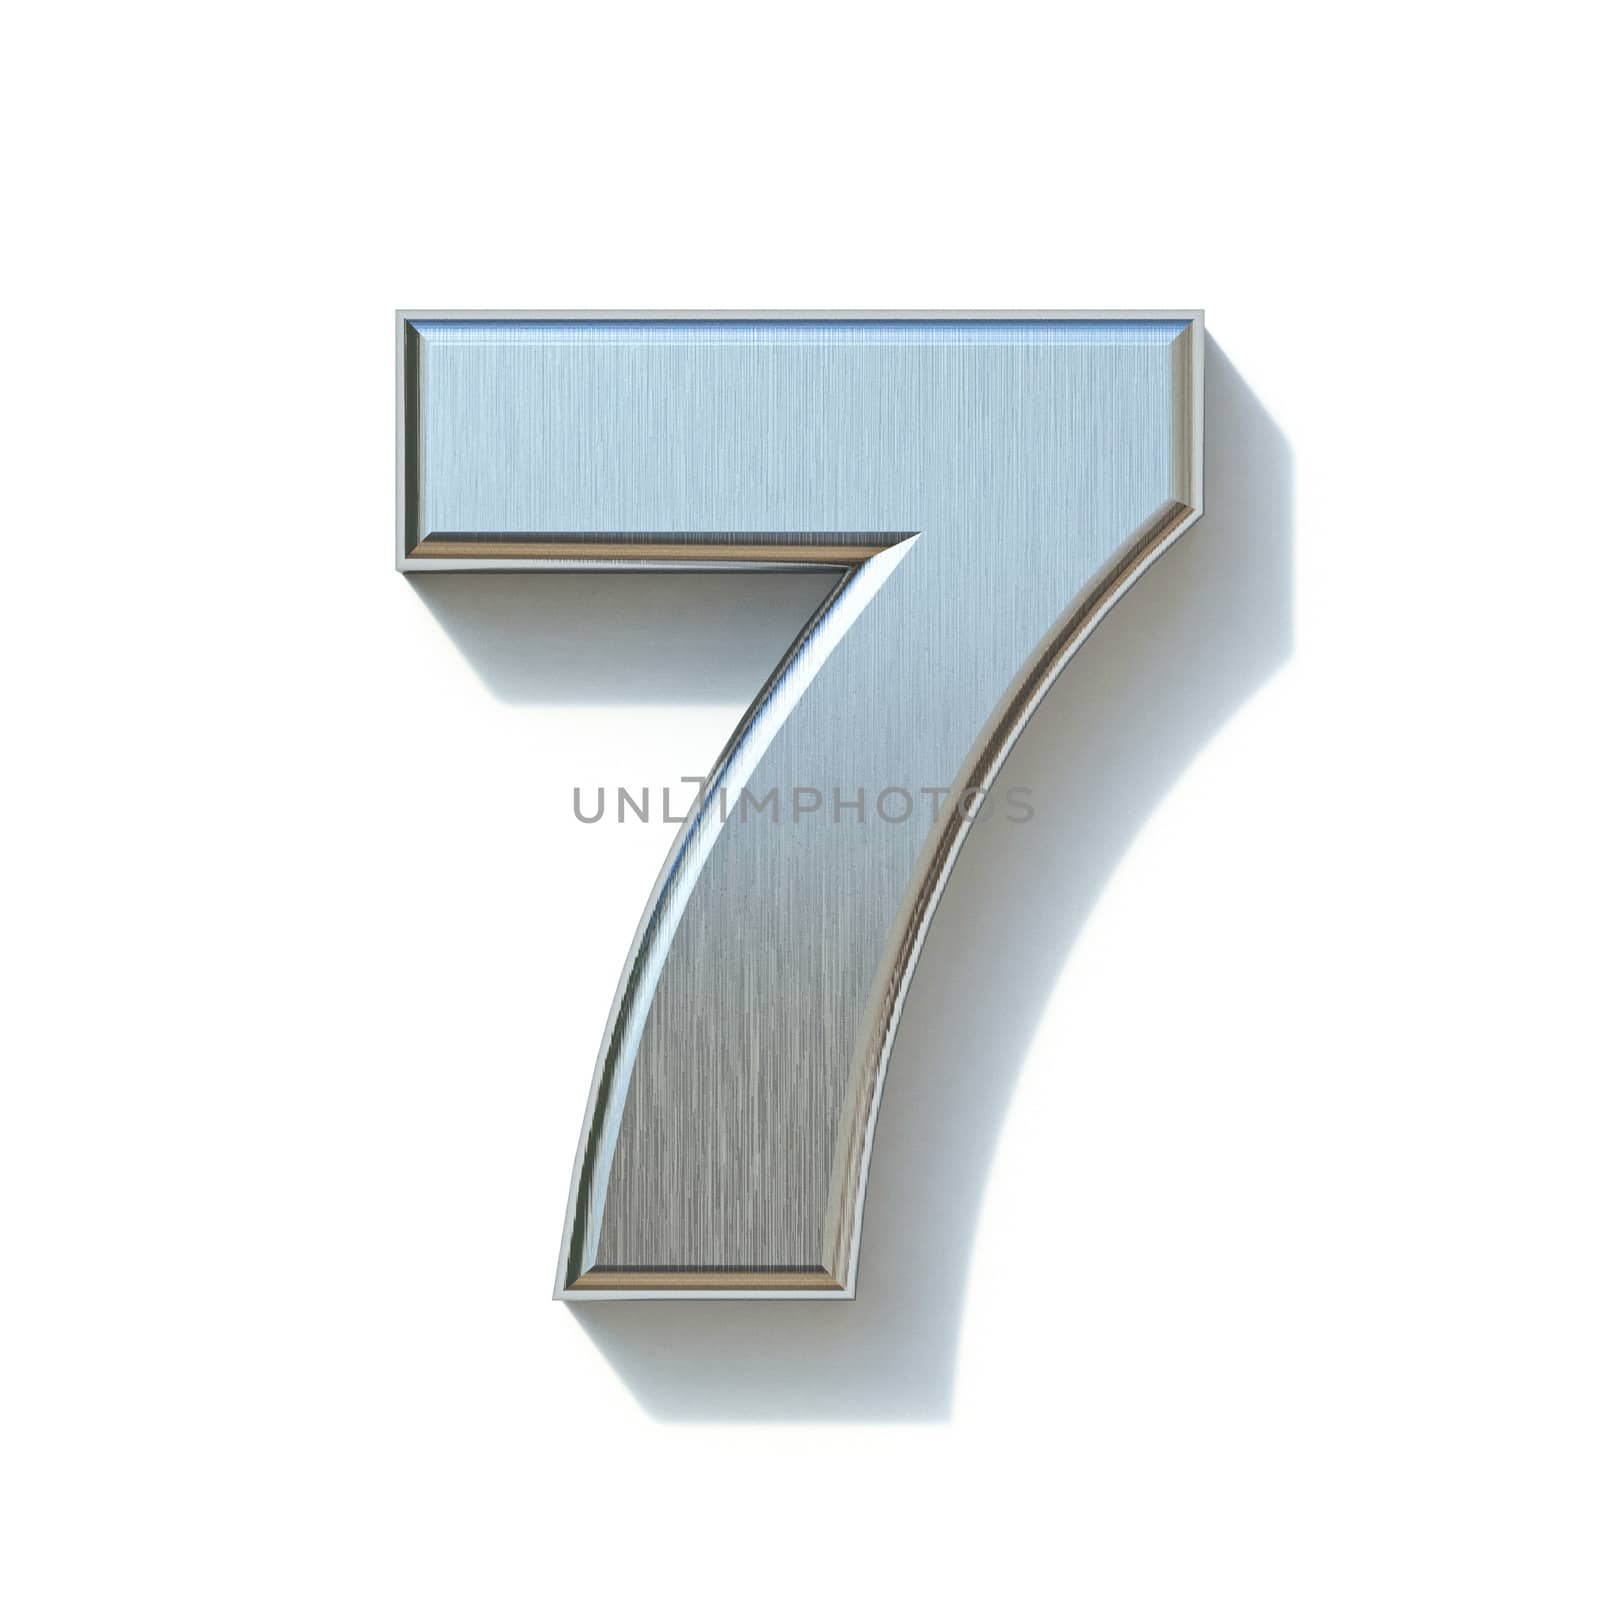 Brushed metal font Number 7 SEVEN 3D render illustration isolated on white background